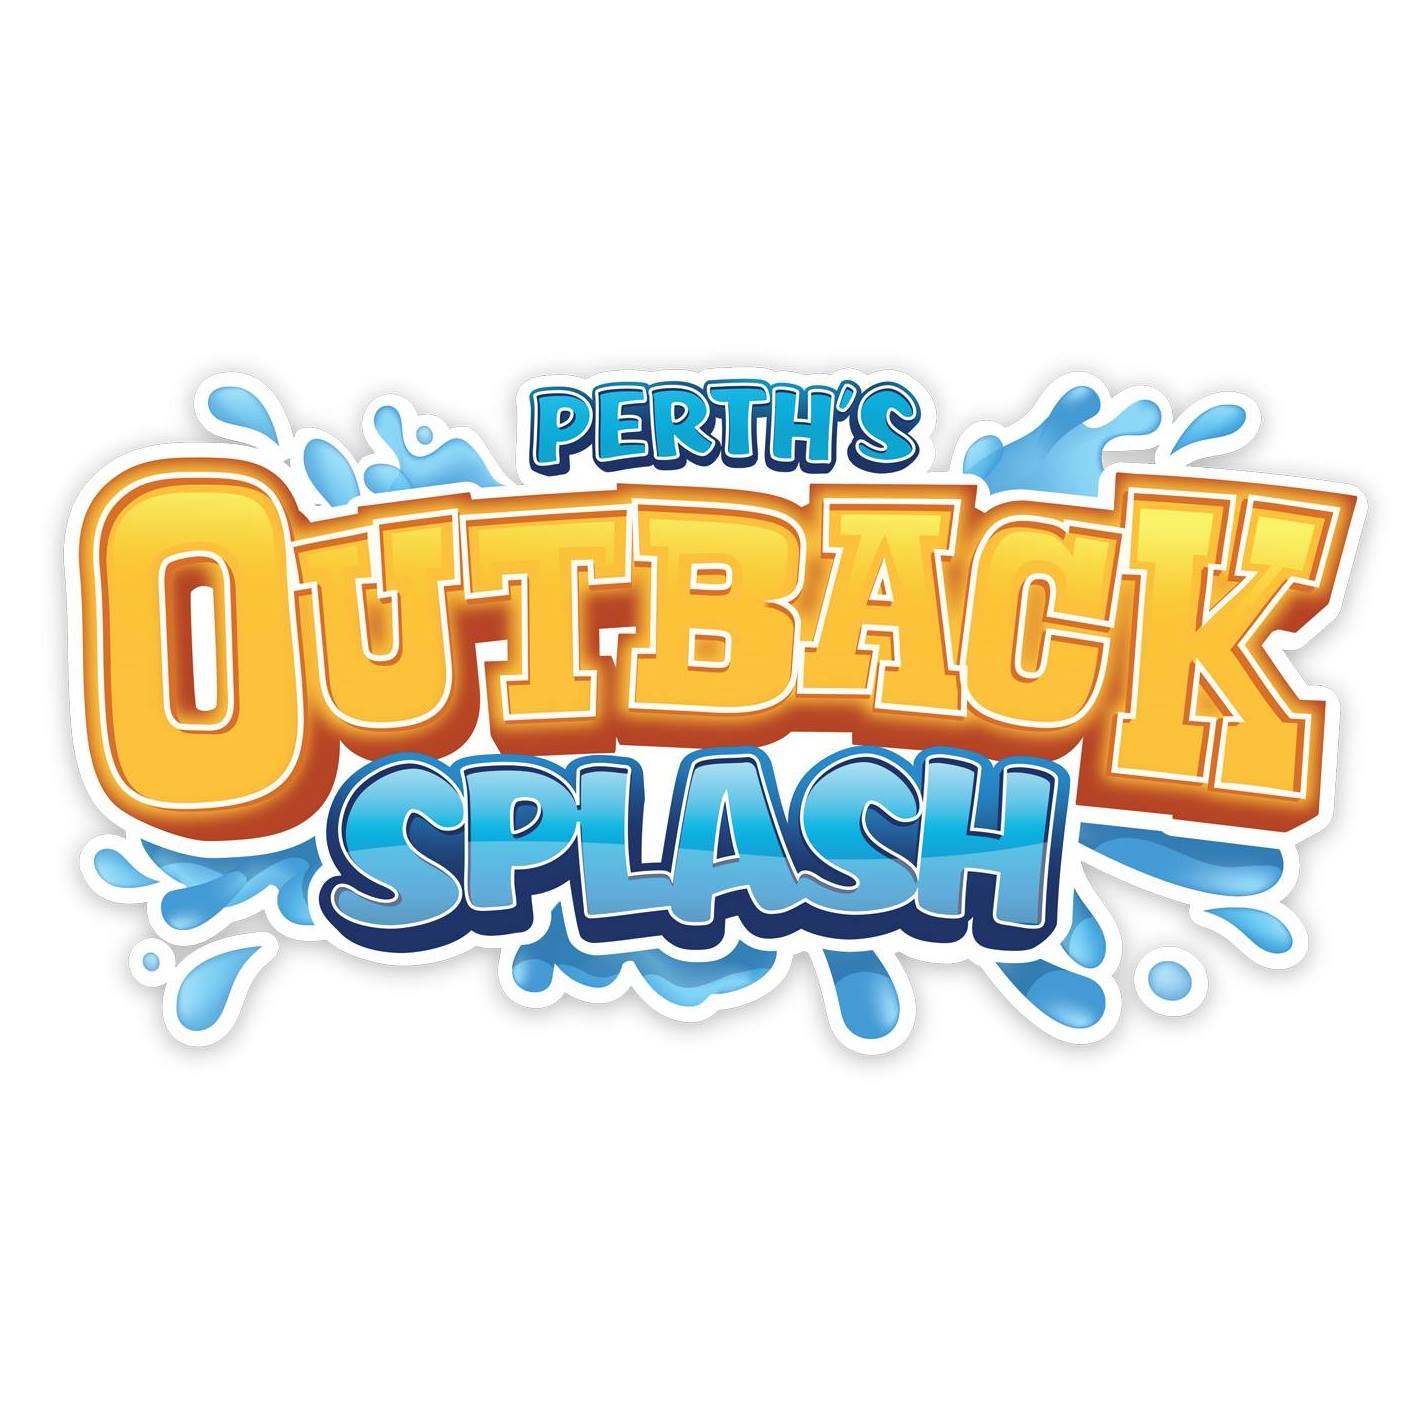 Outback Splash facebook logo (Sept 2021)